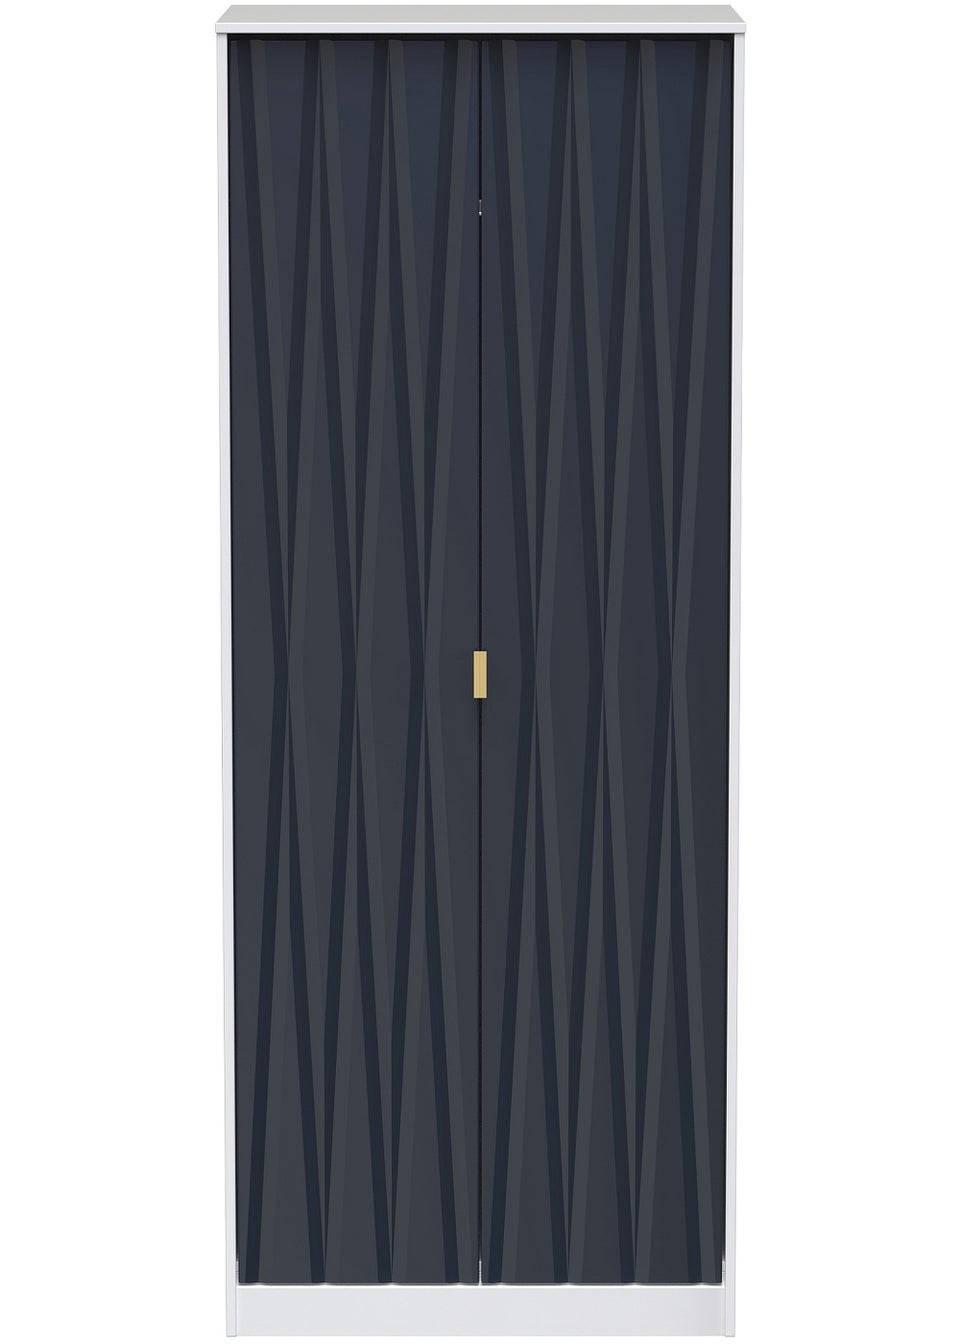 Swift Prism 2 Door Wardrobe (201.5cm x 76.5cm x 53cm)